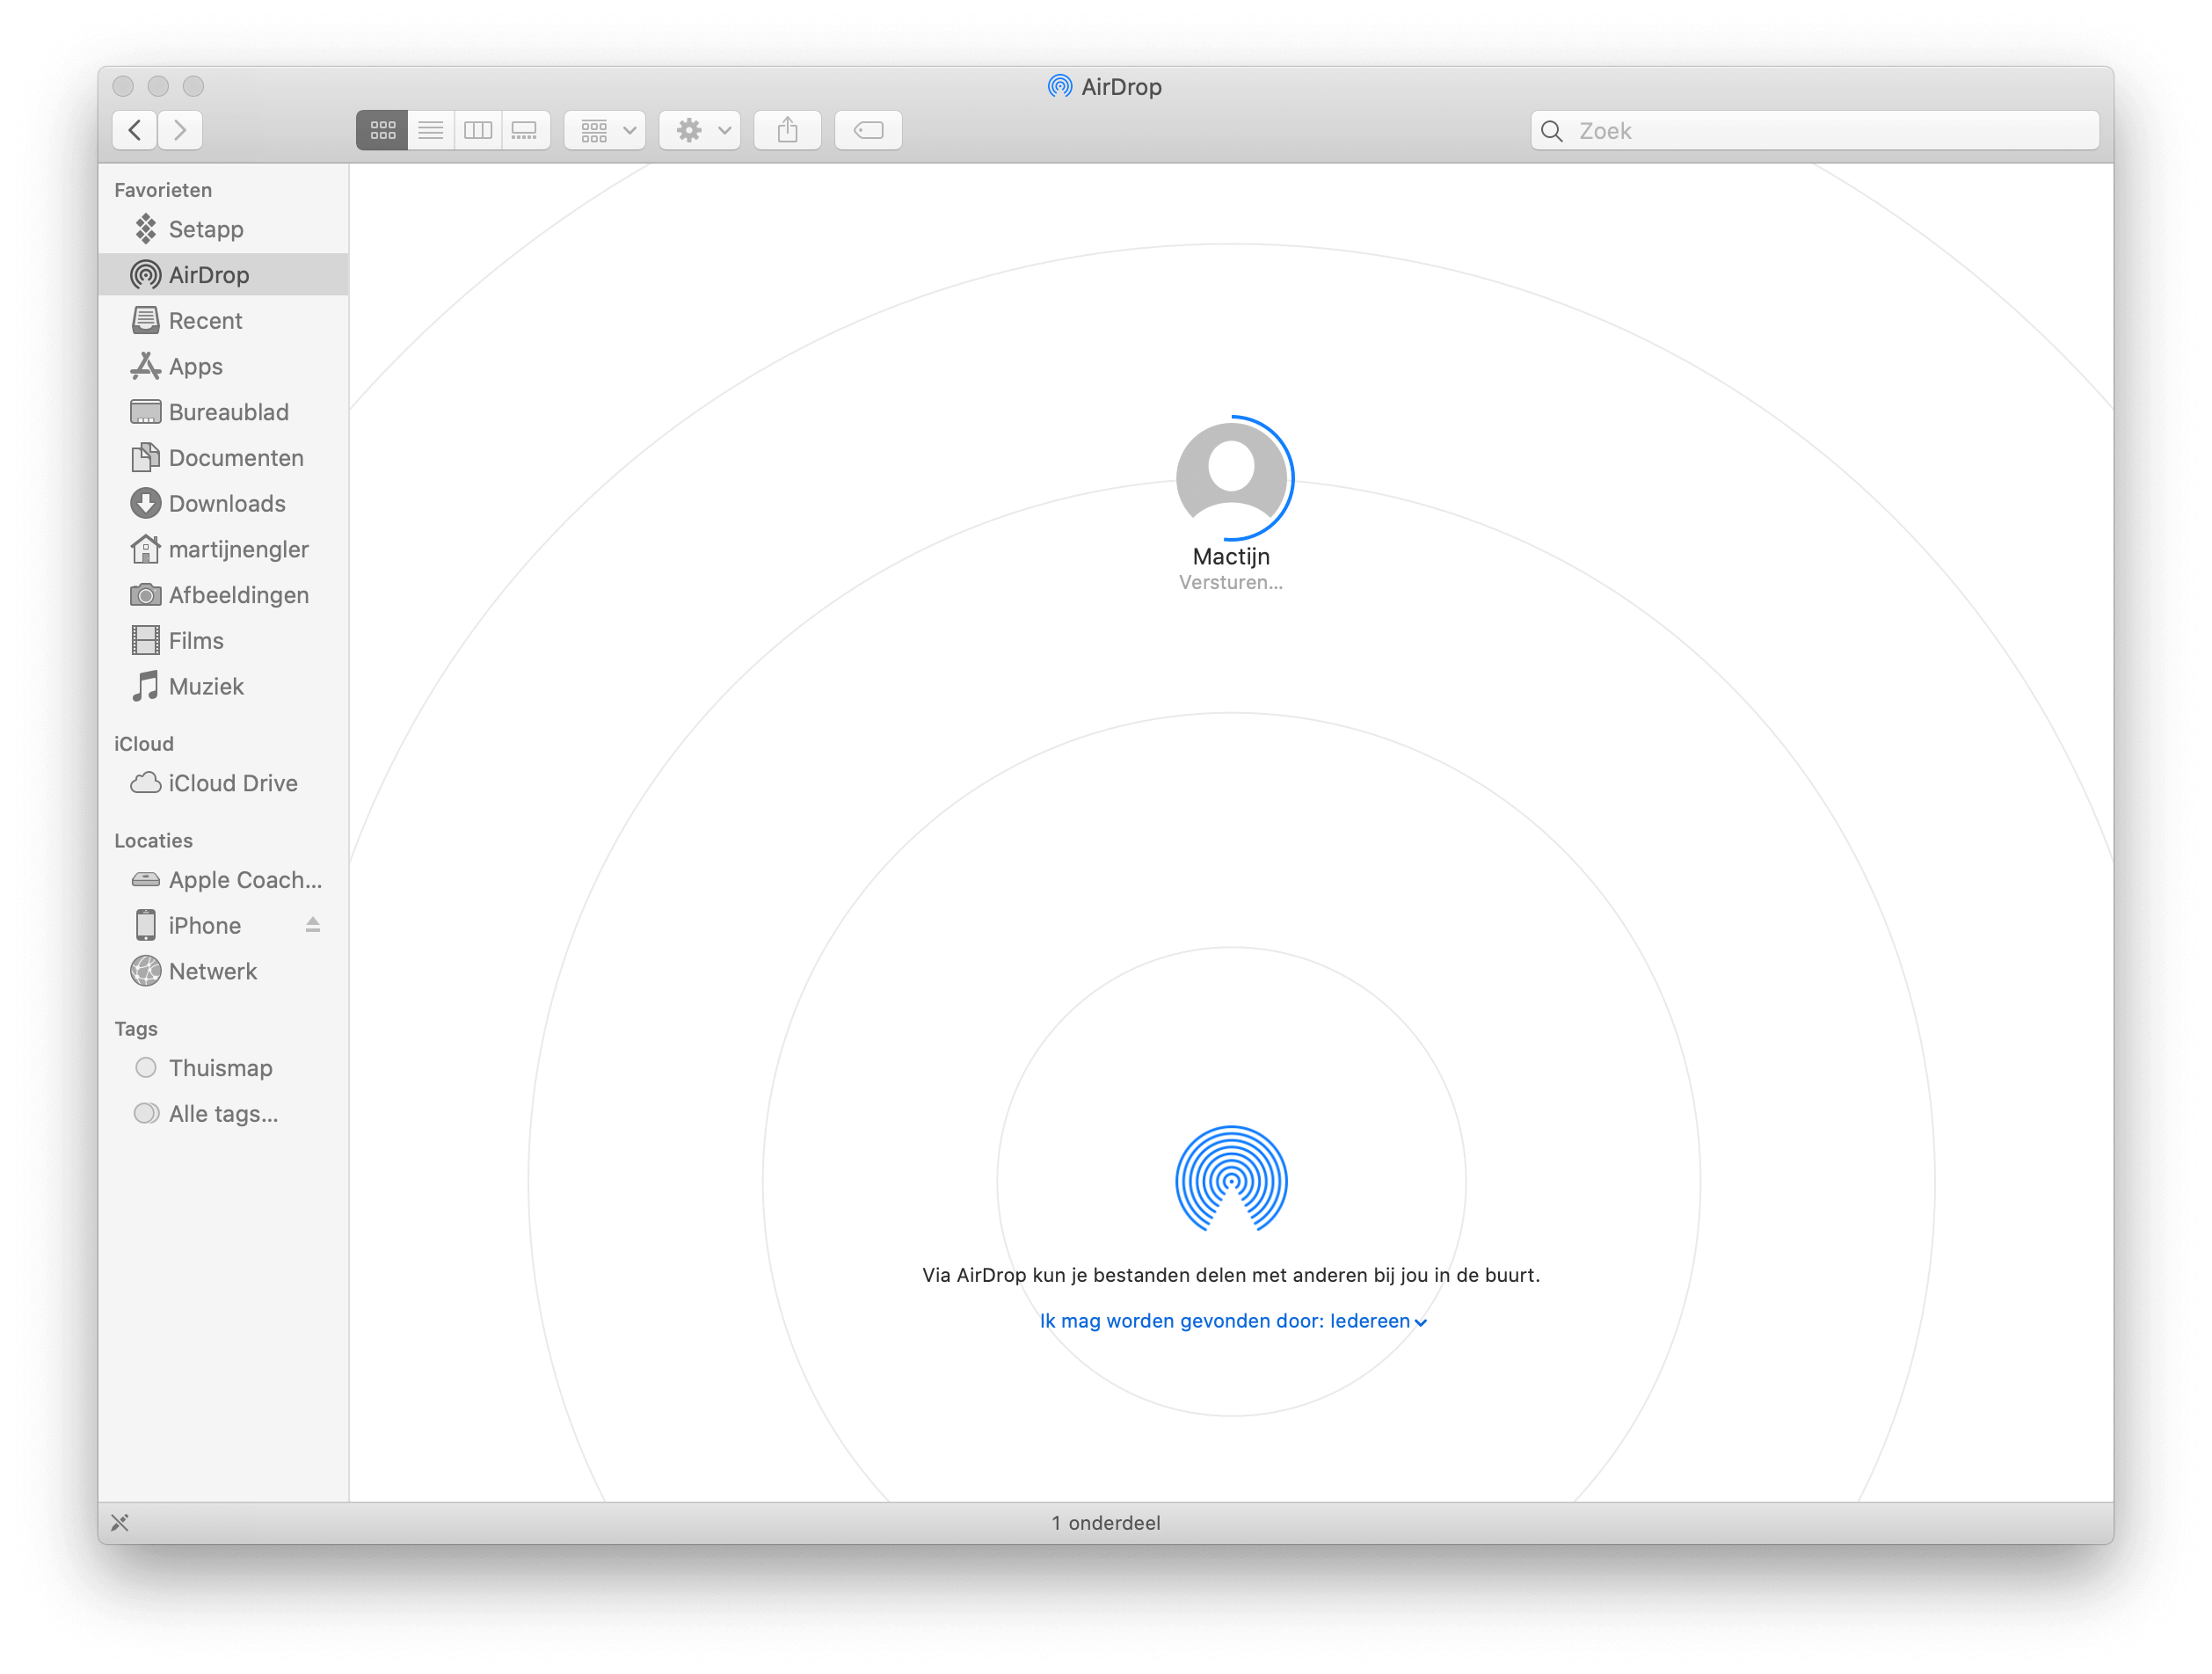 We zien hier hoe AirDrop gebruikt wordt om een bestand te delen vanaf de Mac, en ongeveer halverwege is